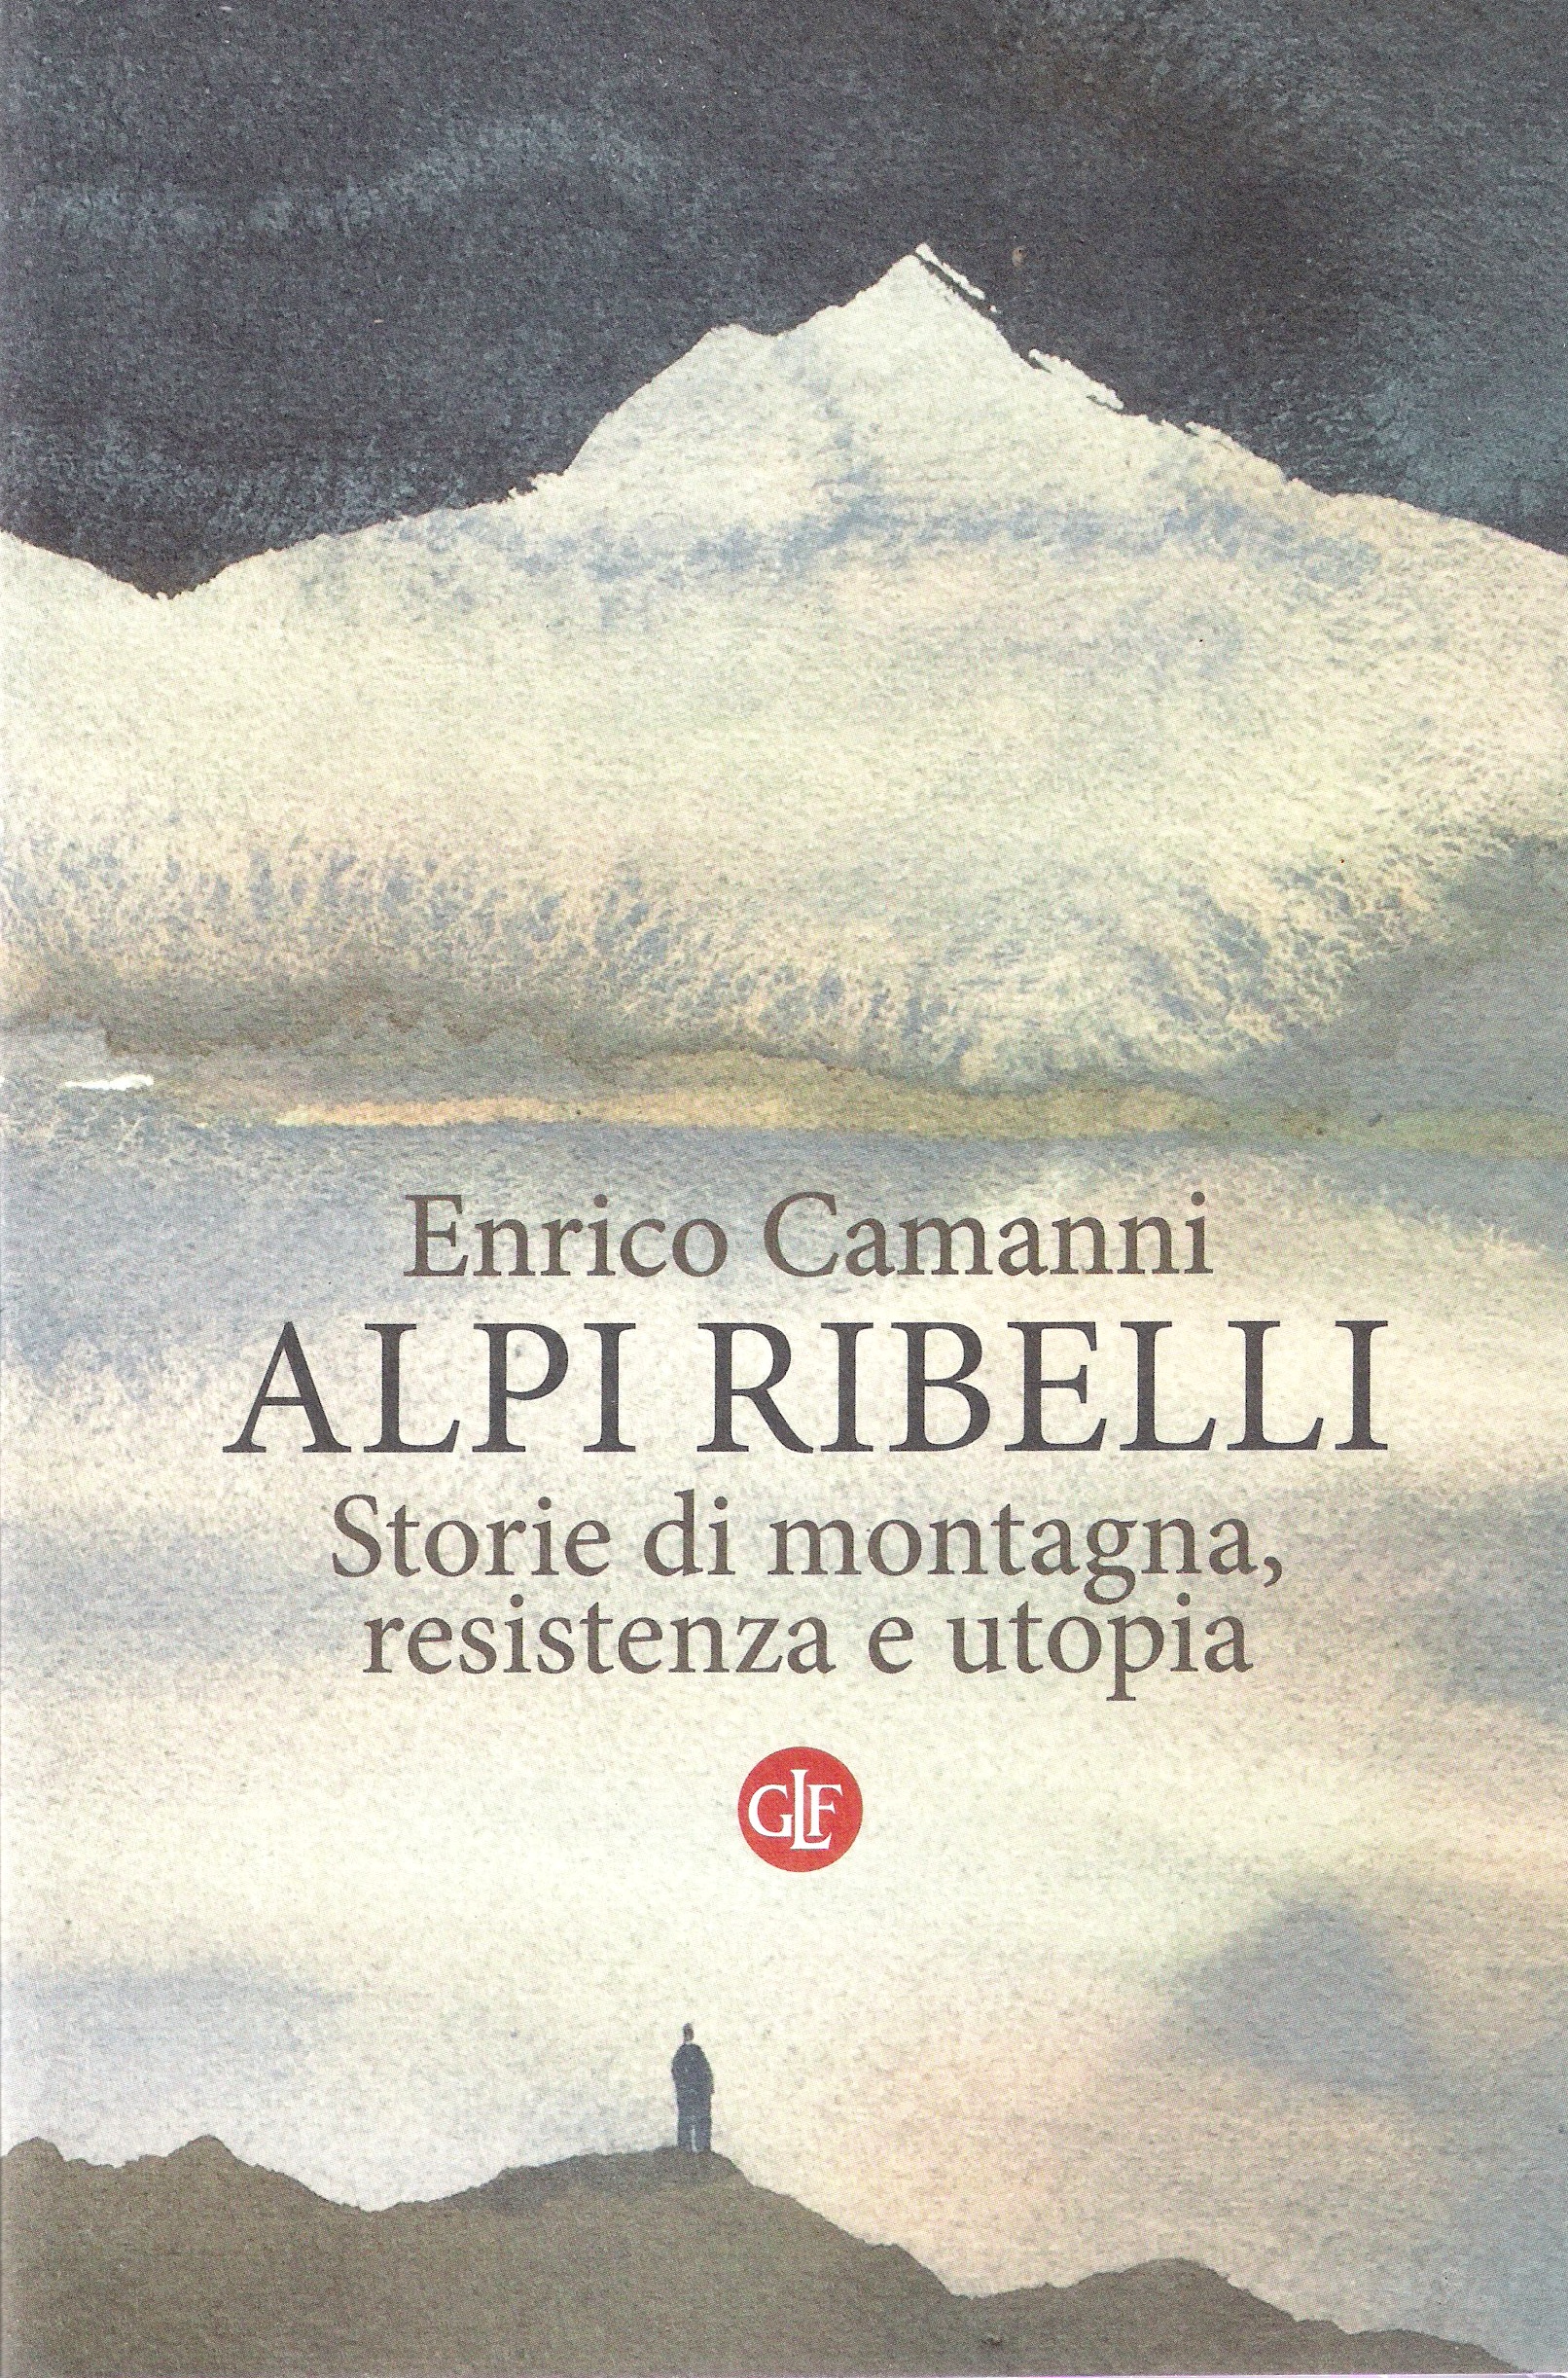 Alpi Ribelli book cover